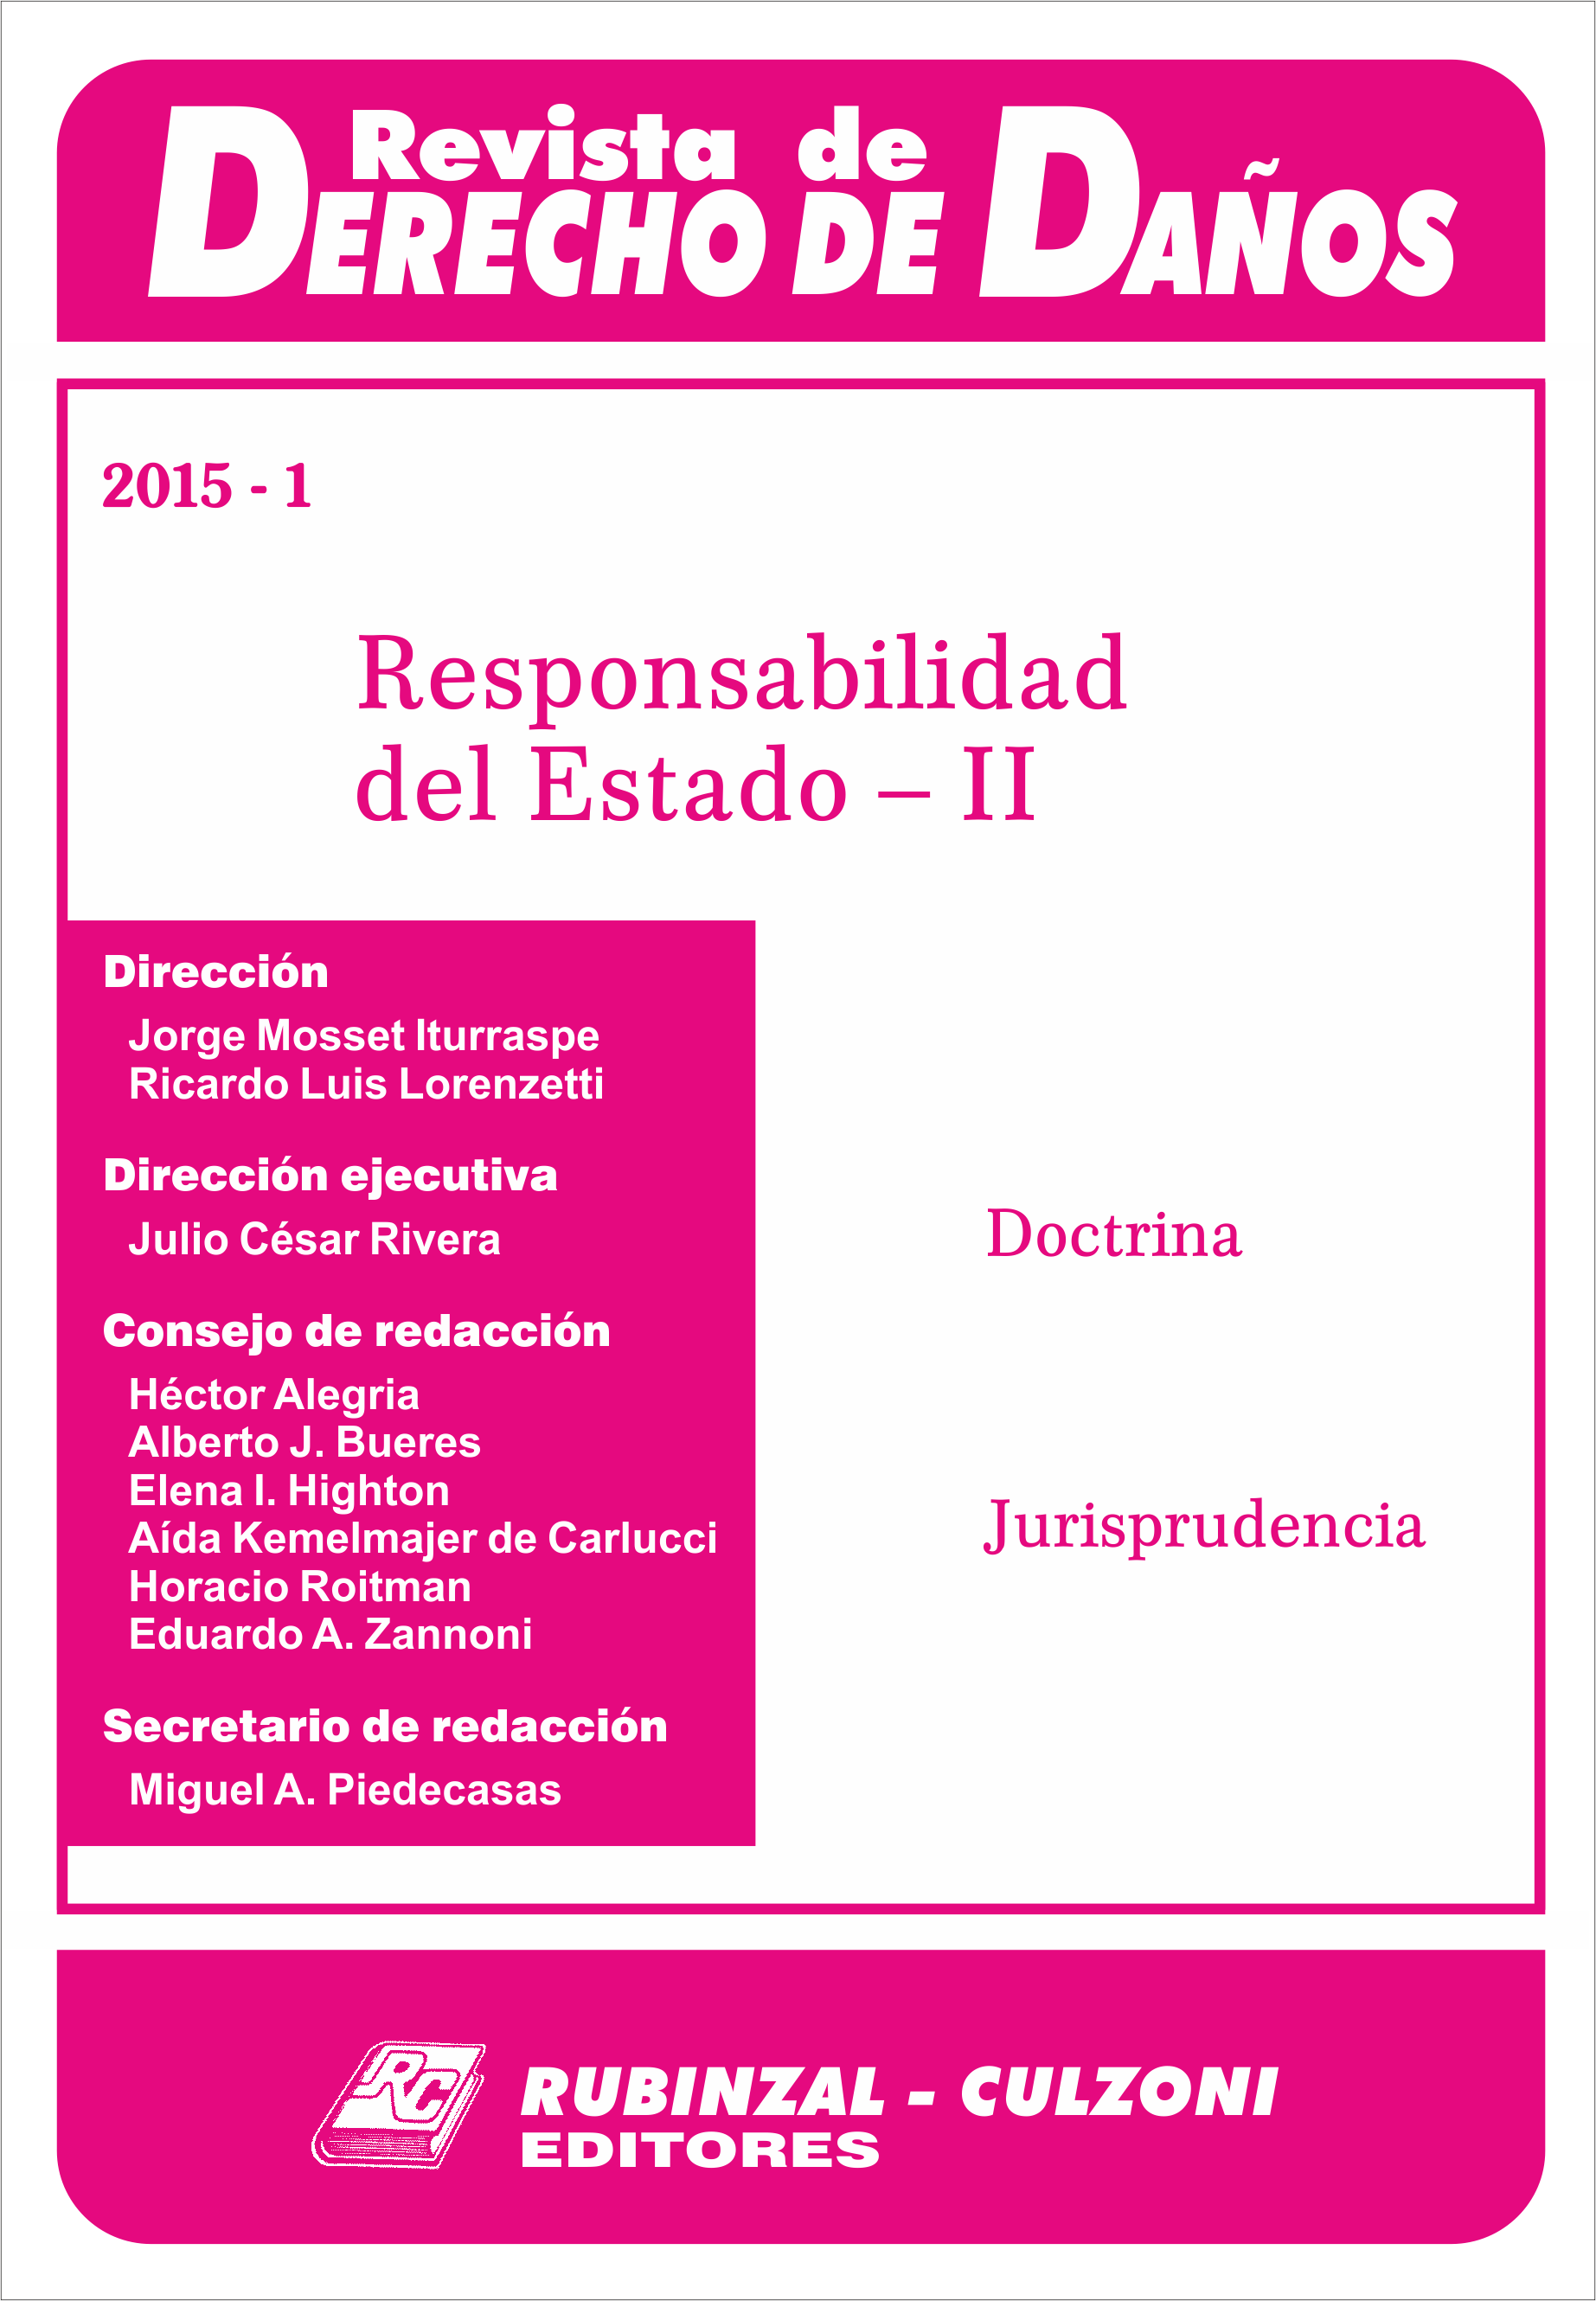 Revista de Derecho de Daños - Responsabilidad del Estado - II